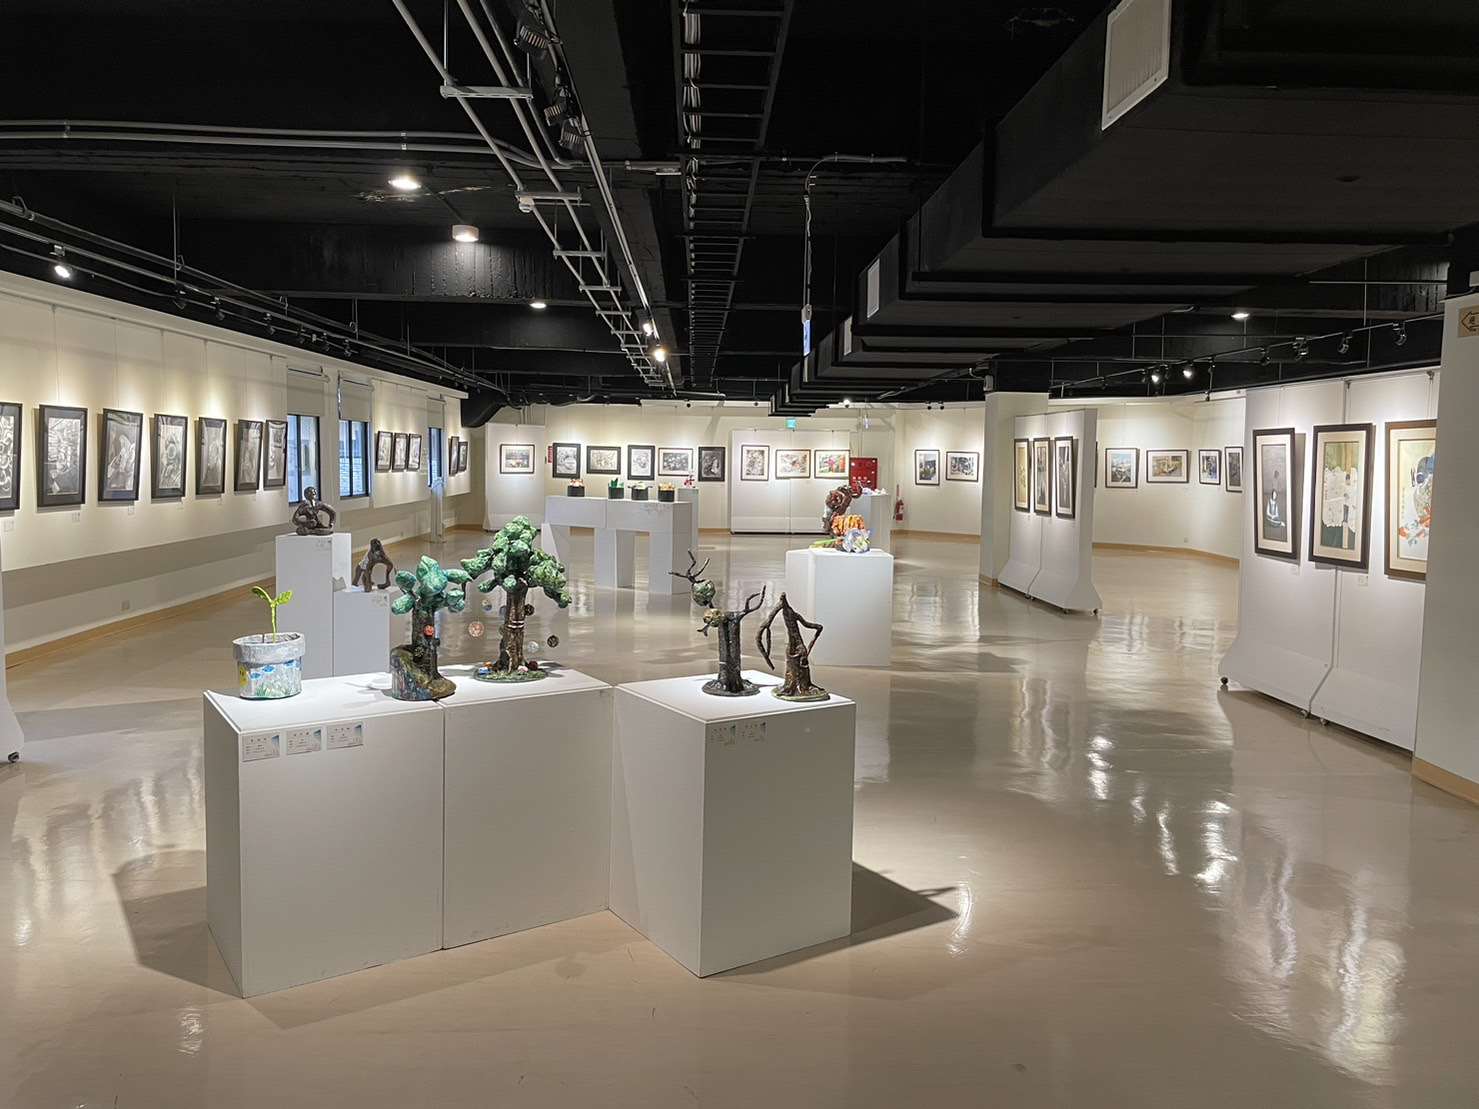 東南國中第33屆美術班畢業成果展即日起至5/7文觀處展覽館2、3樓展出，歡迎民眾踴躍前往欣賞。